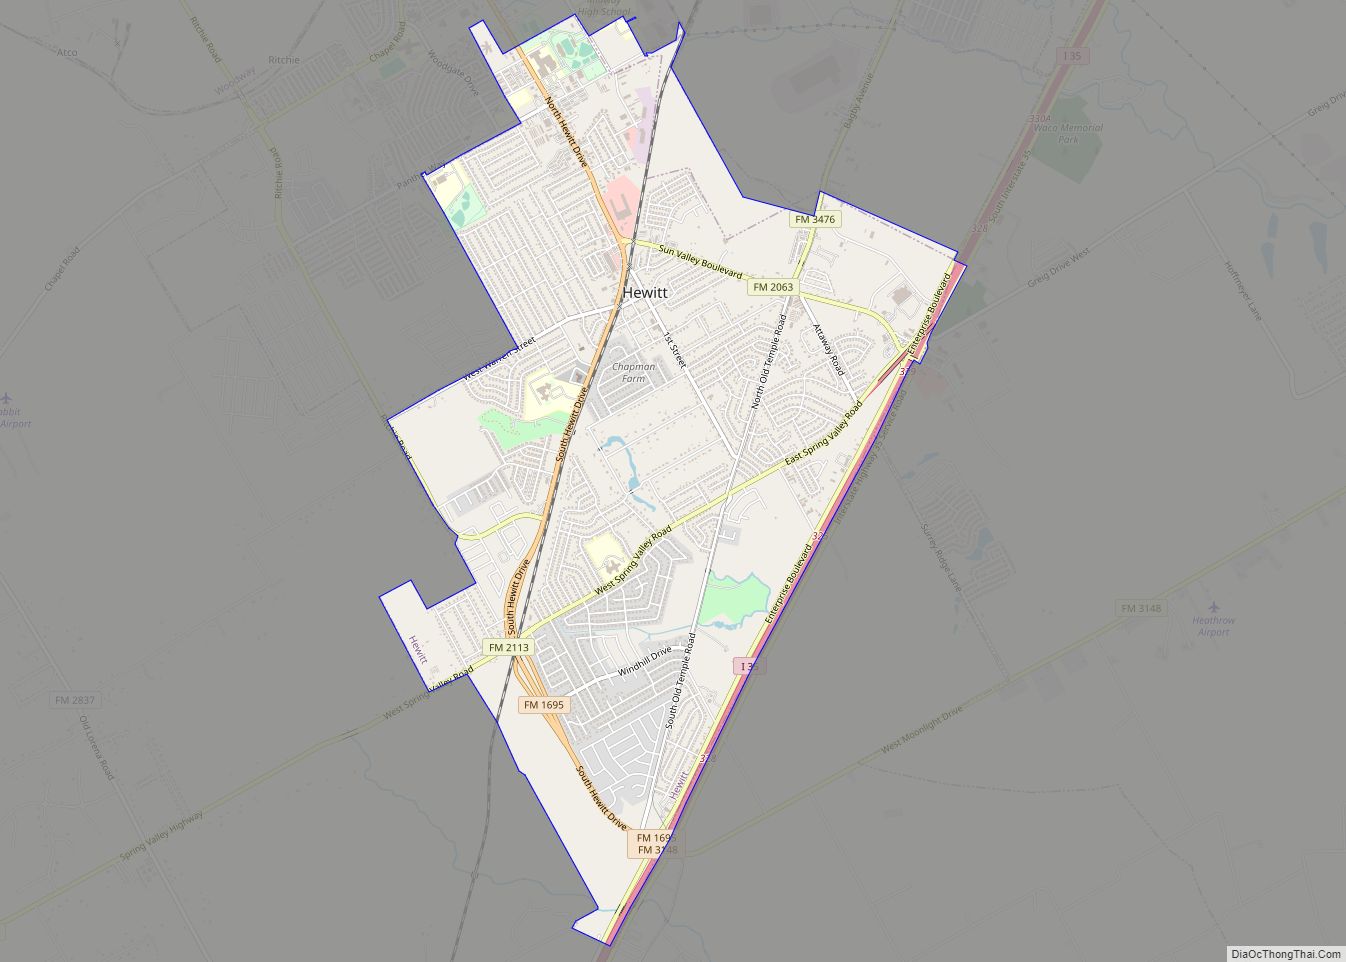 Map of Hewitt city, Texas